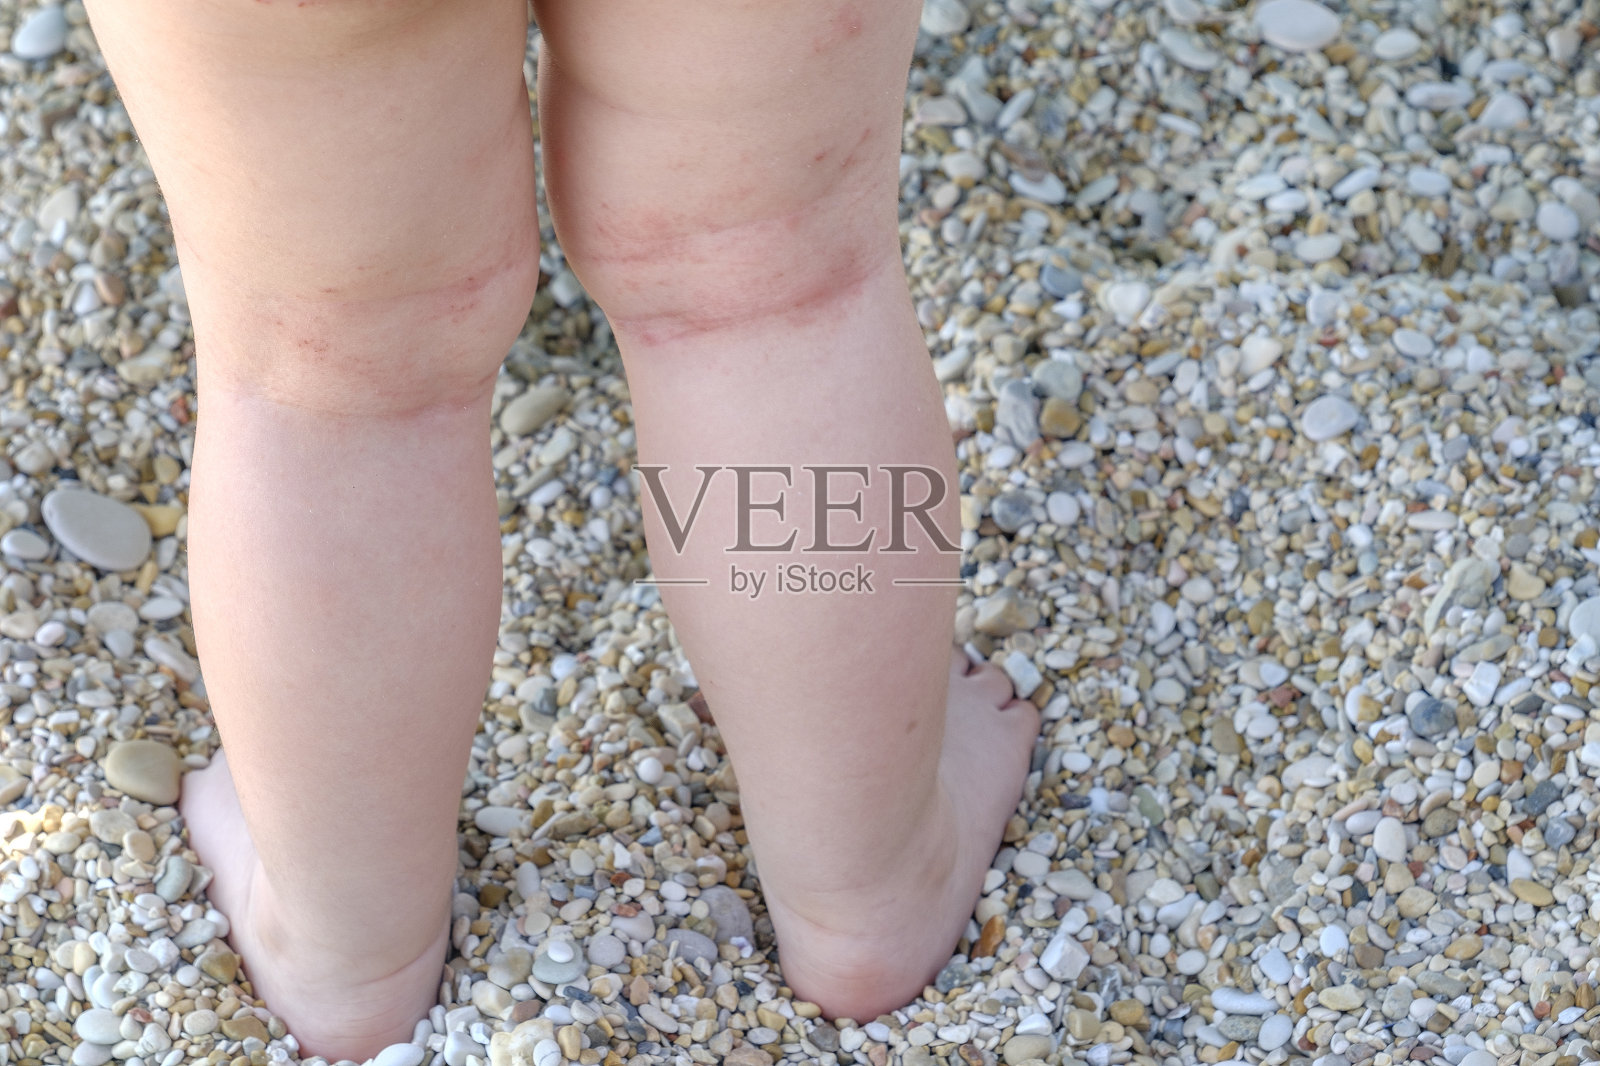 皮肤刺激新生儿腿部特应性皮炎照片摄影图片